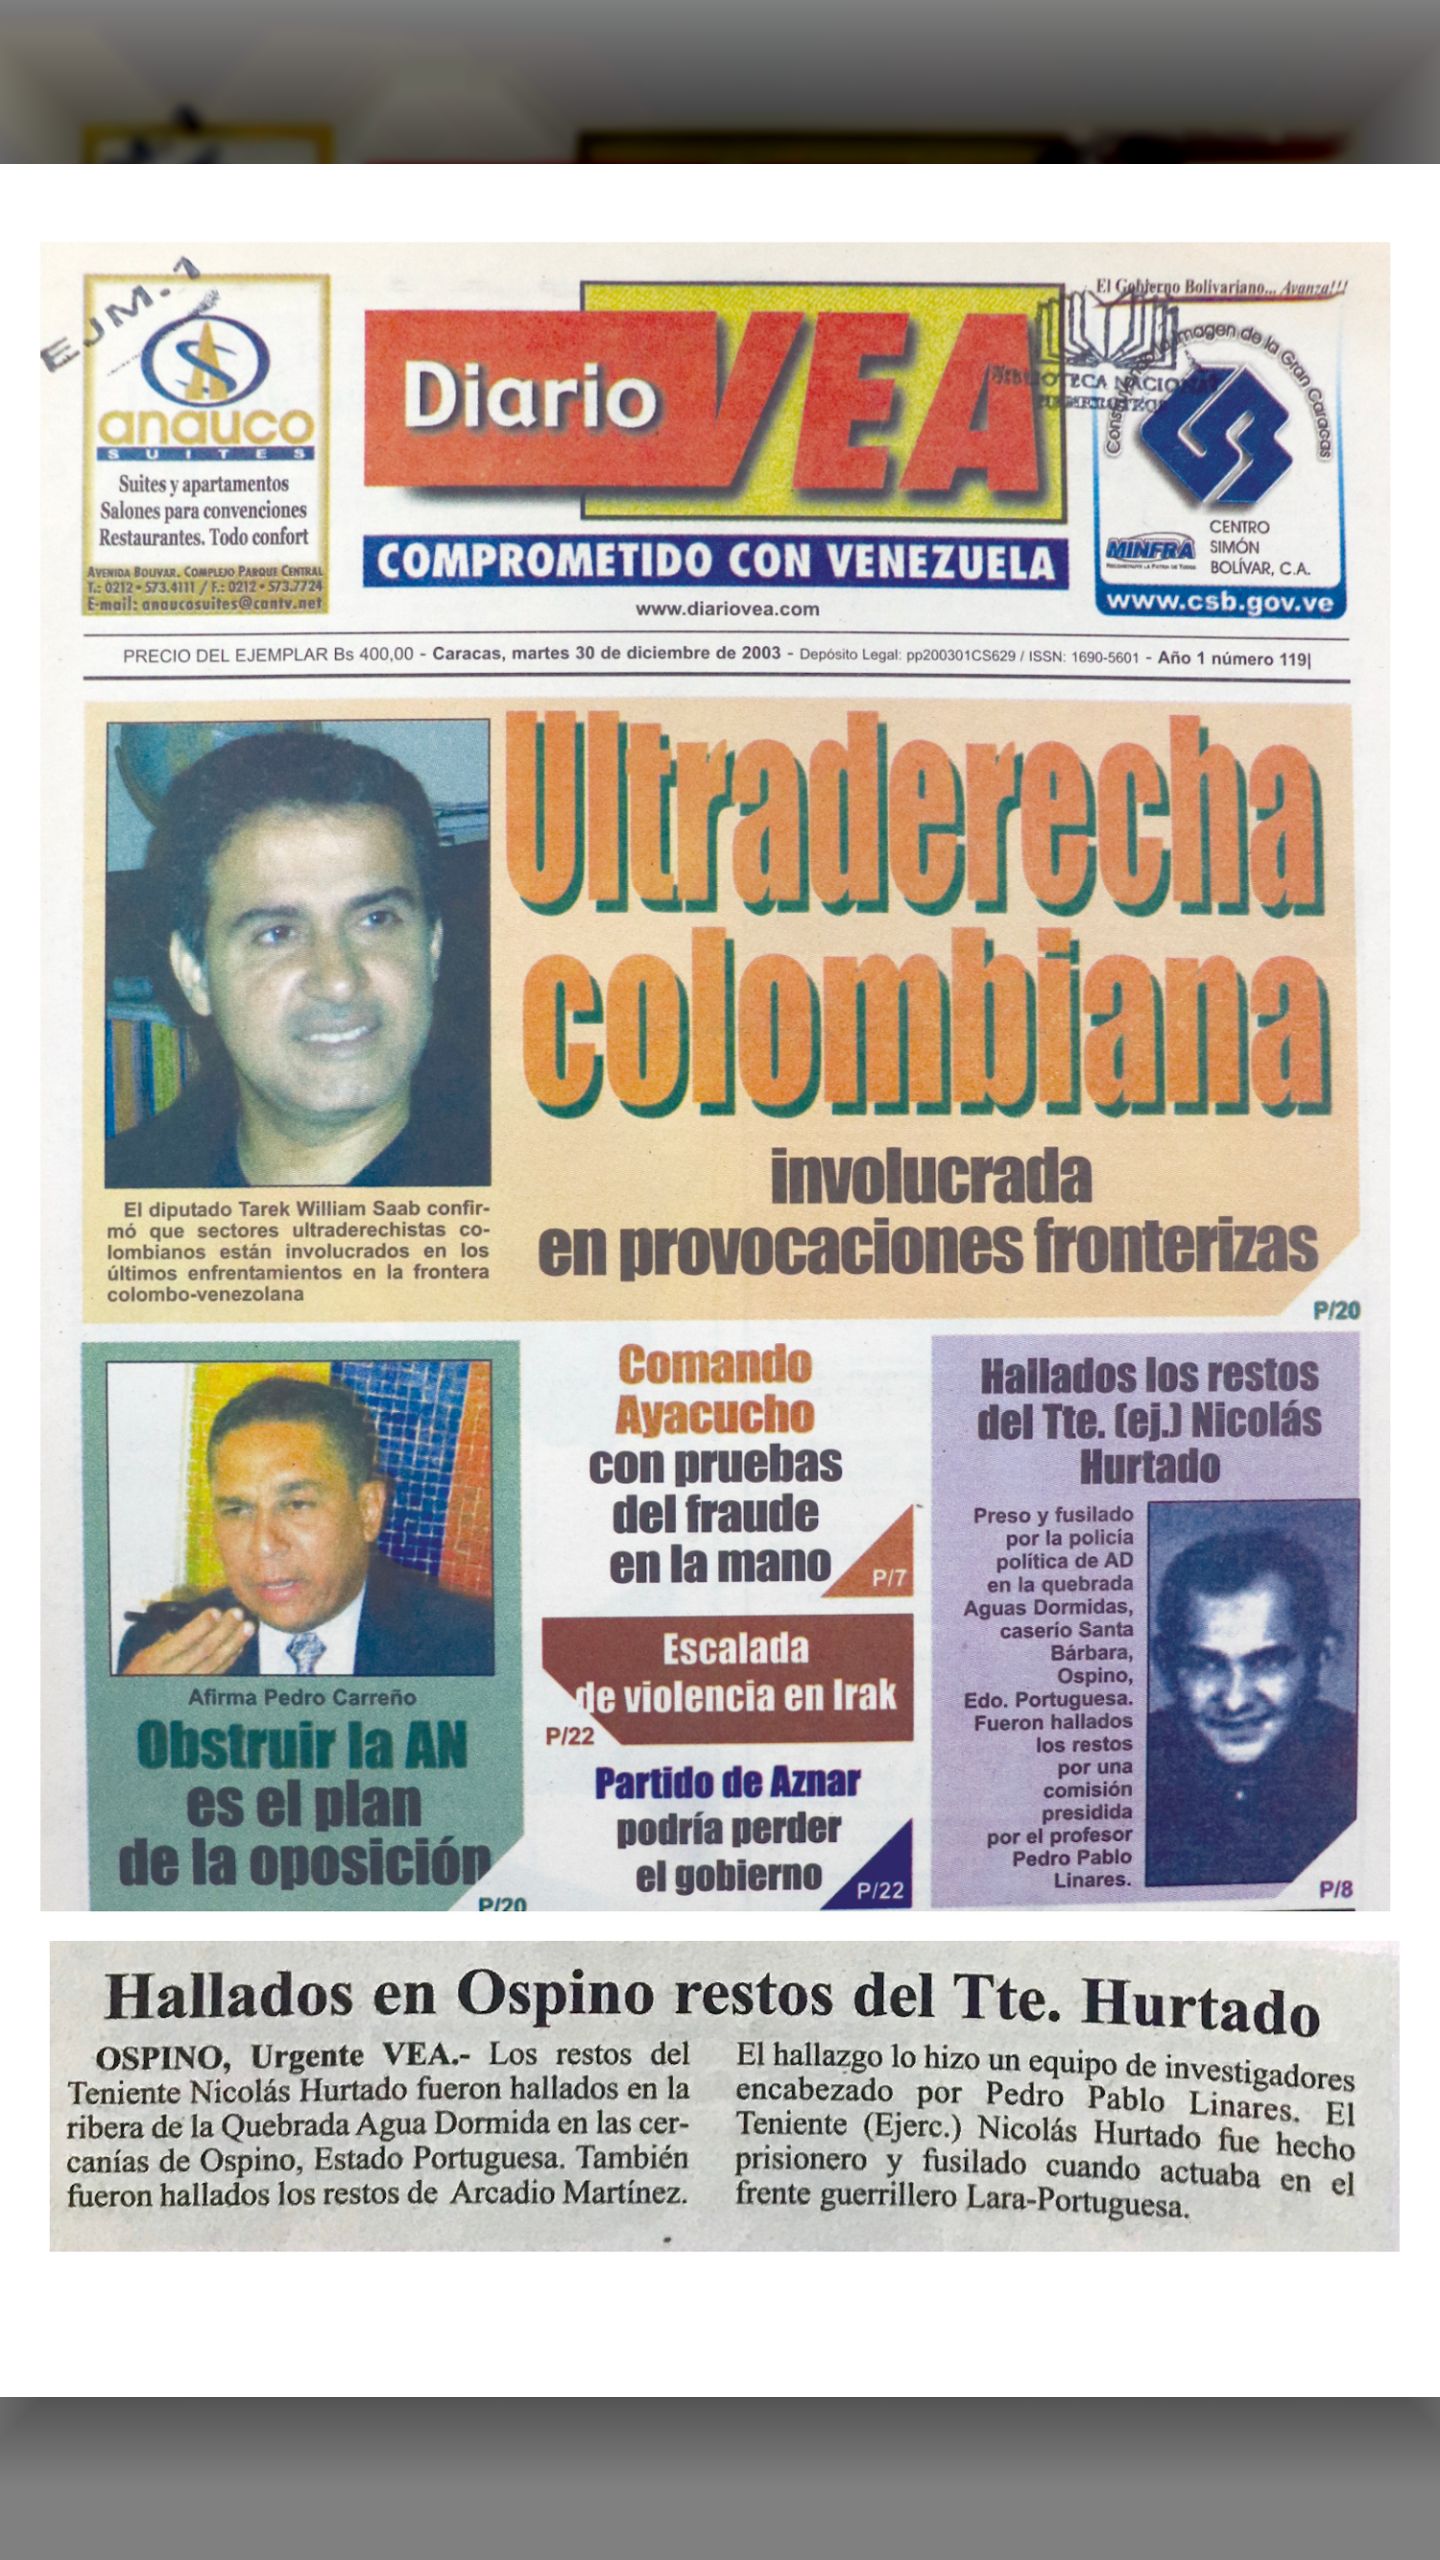 Hallados los restos del Tte.(ej.) Nicolás Hurtado (Diario VEA, 25 diciembre de 2003)